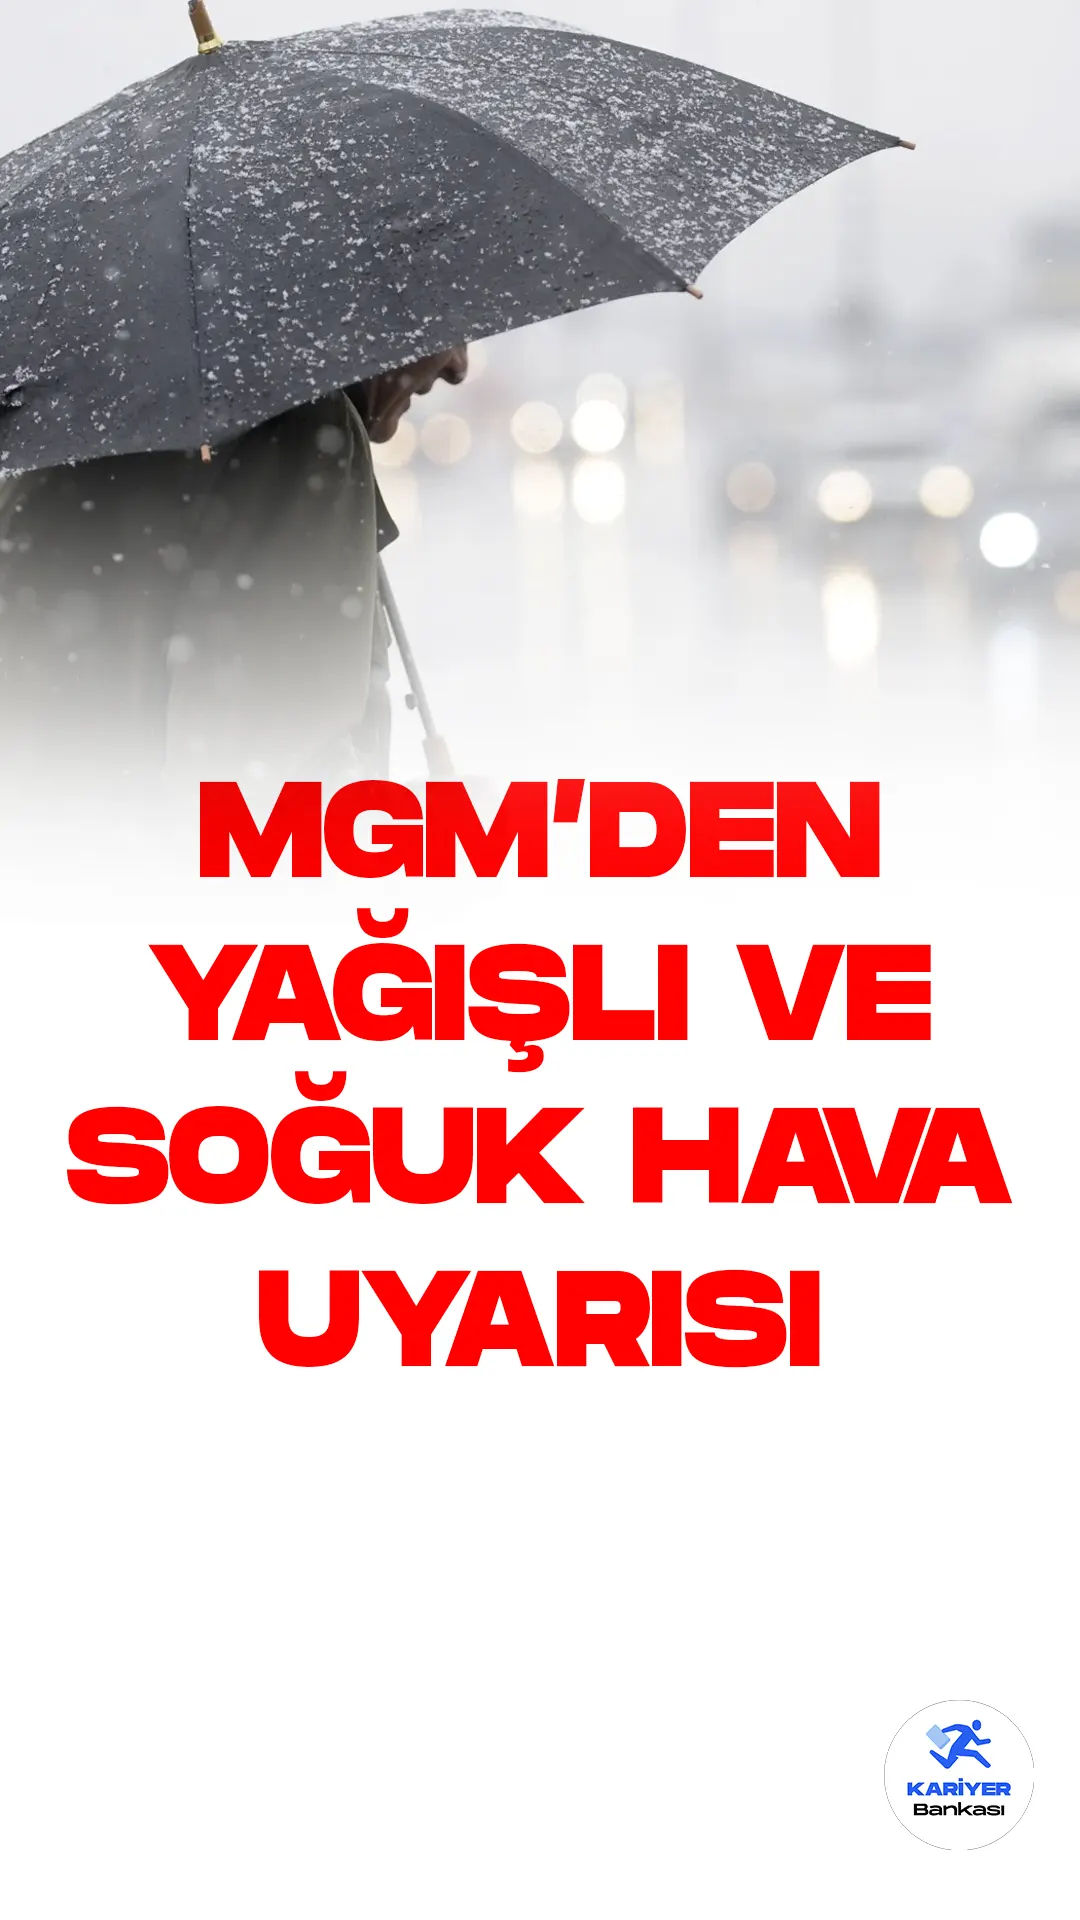 Meteoroloji Genel Müdürlüğü tarafından yapılan açıklamada, yurt genelinde yağışlı ve soğuk hava beklendiği duyuruldu. İstanbul ve İzmir'de yağmur, Ankara'da ise kar yağışı bekleniyor. Sıcaklıkların da hissedilir derecede azalması tahmin ediliyor.